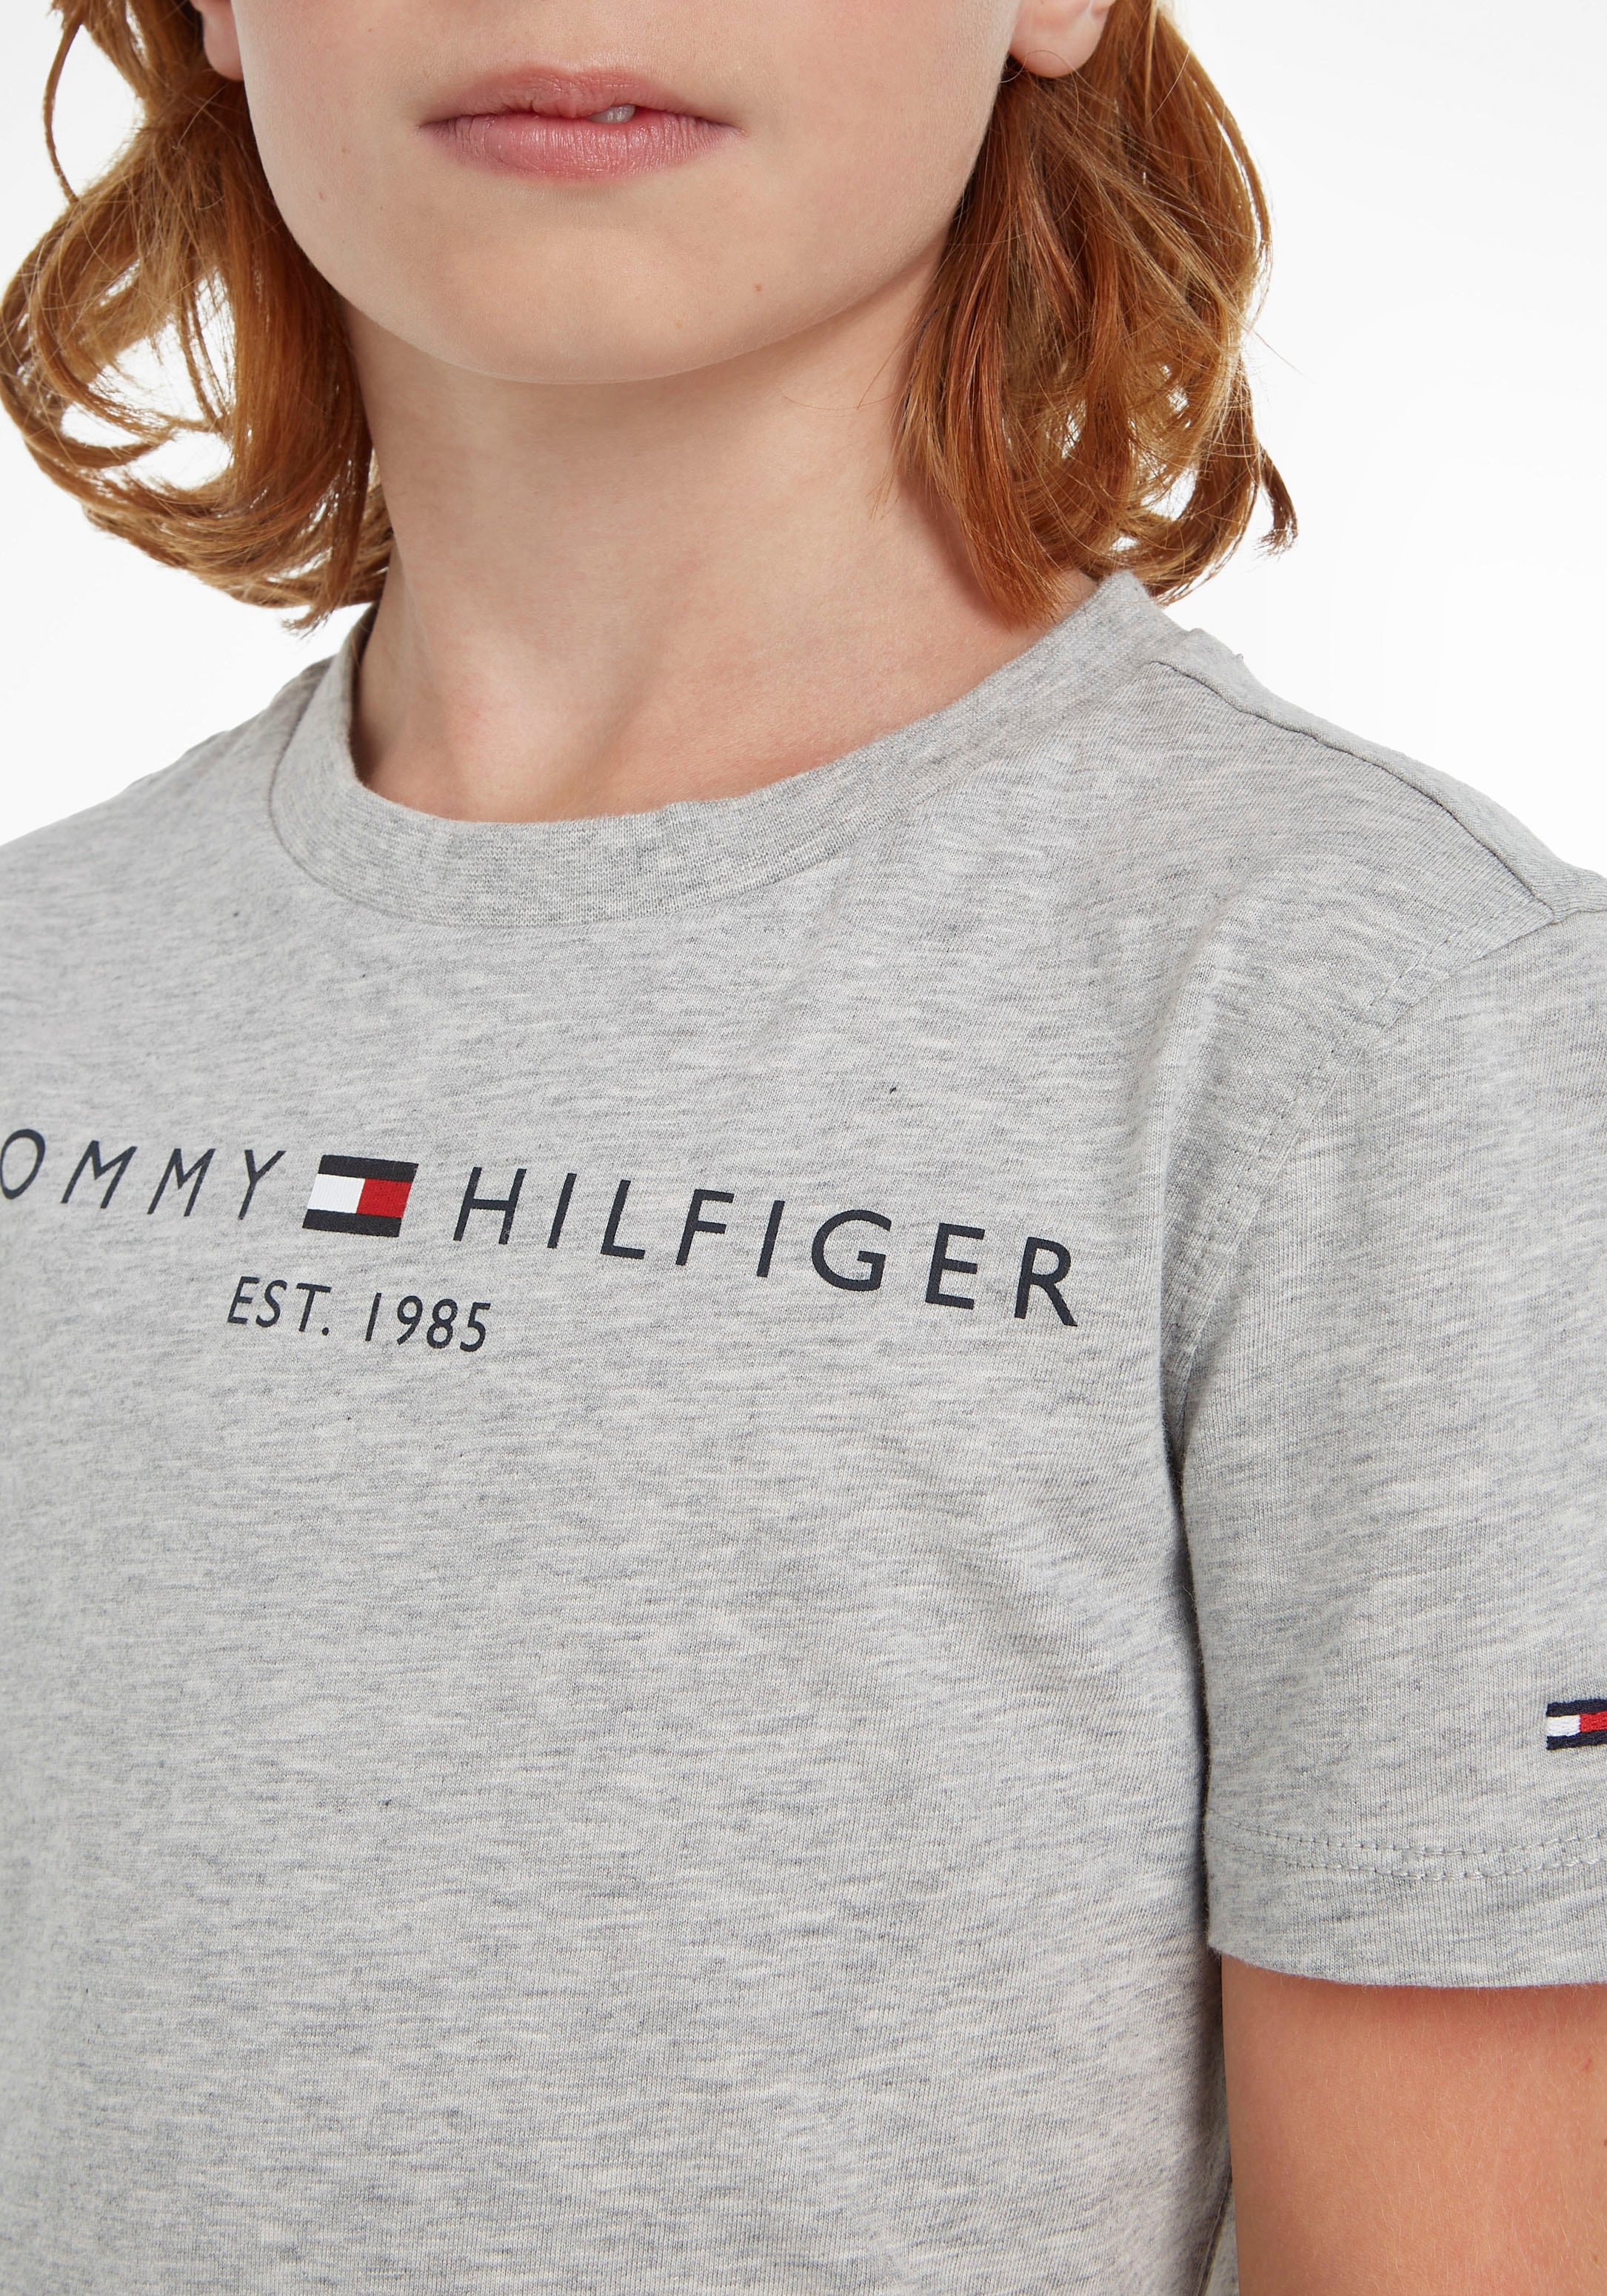 Kinder OTTO und »ESSENTIAL Jungen Hilfiger T-Shirt MiniMe,für Kids bestellen Junior Tommy TEE«, Mädchen bei